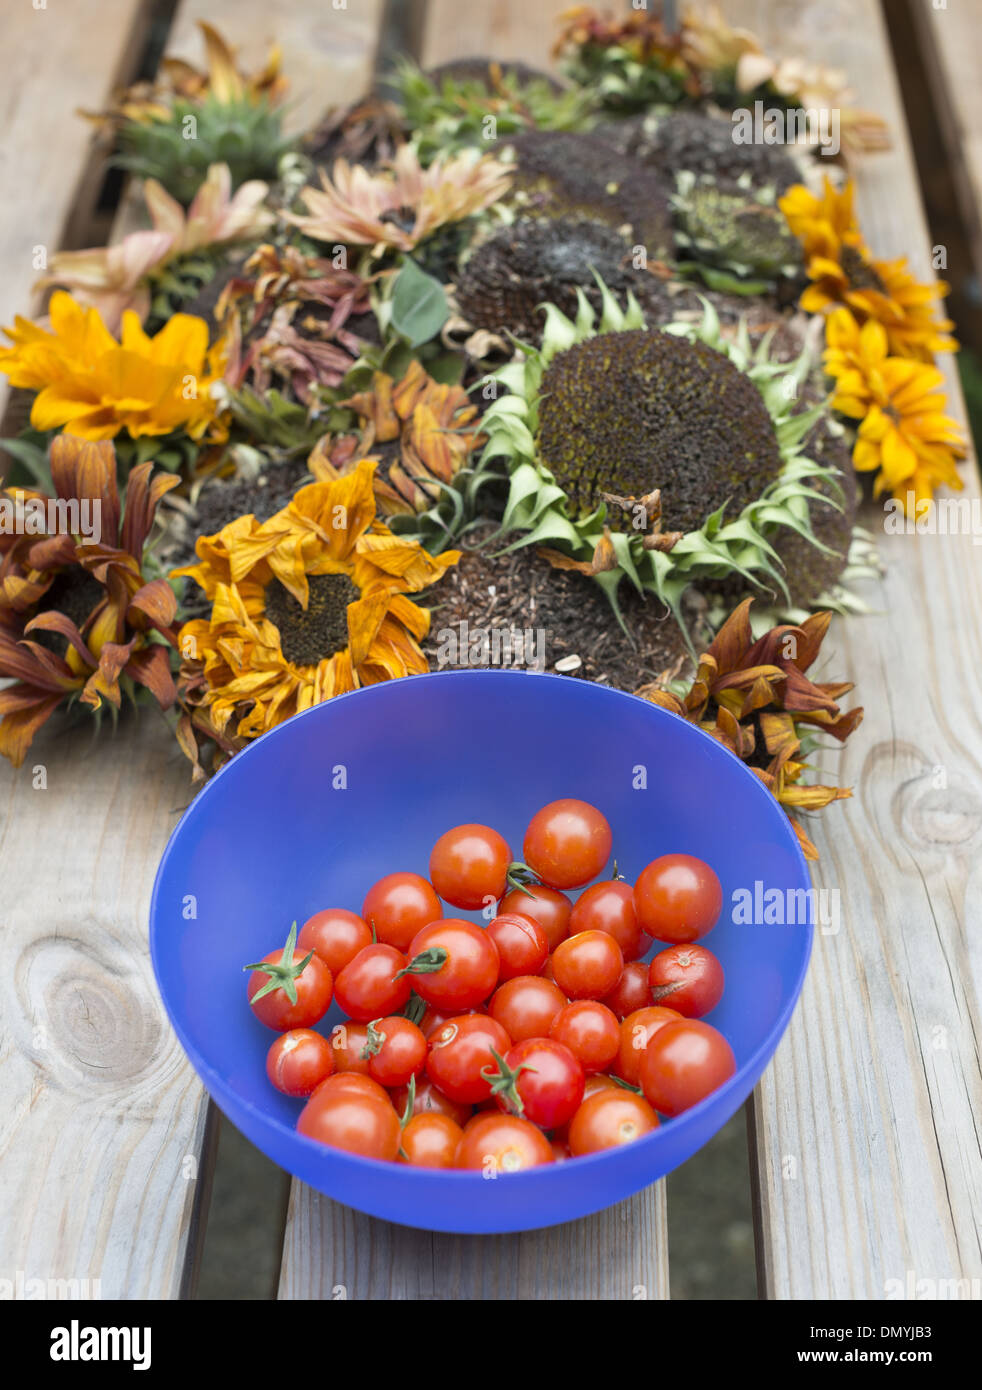 Eine Vielzahl von geernteten Sonnenblumenköpfe austrocknen bereit für Johannisbeermarmelade und eine Schüssel mit frisch gepflückten Cherry-Tomaten Stockfoto